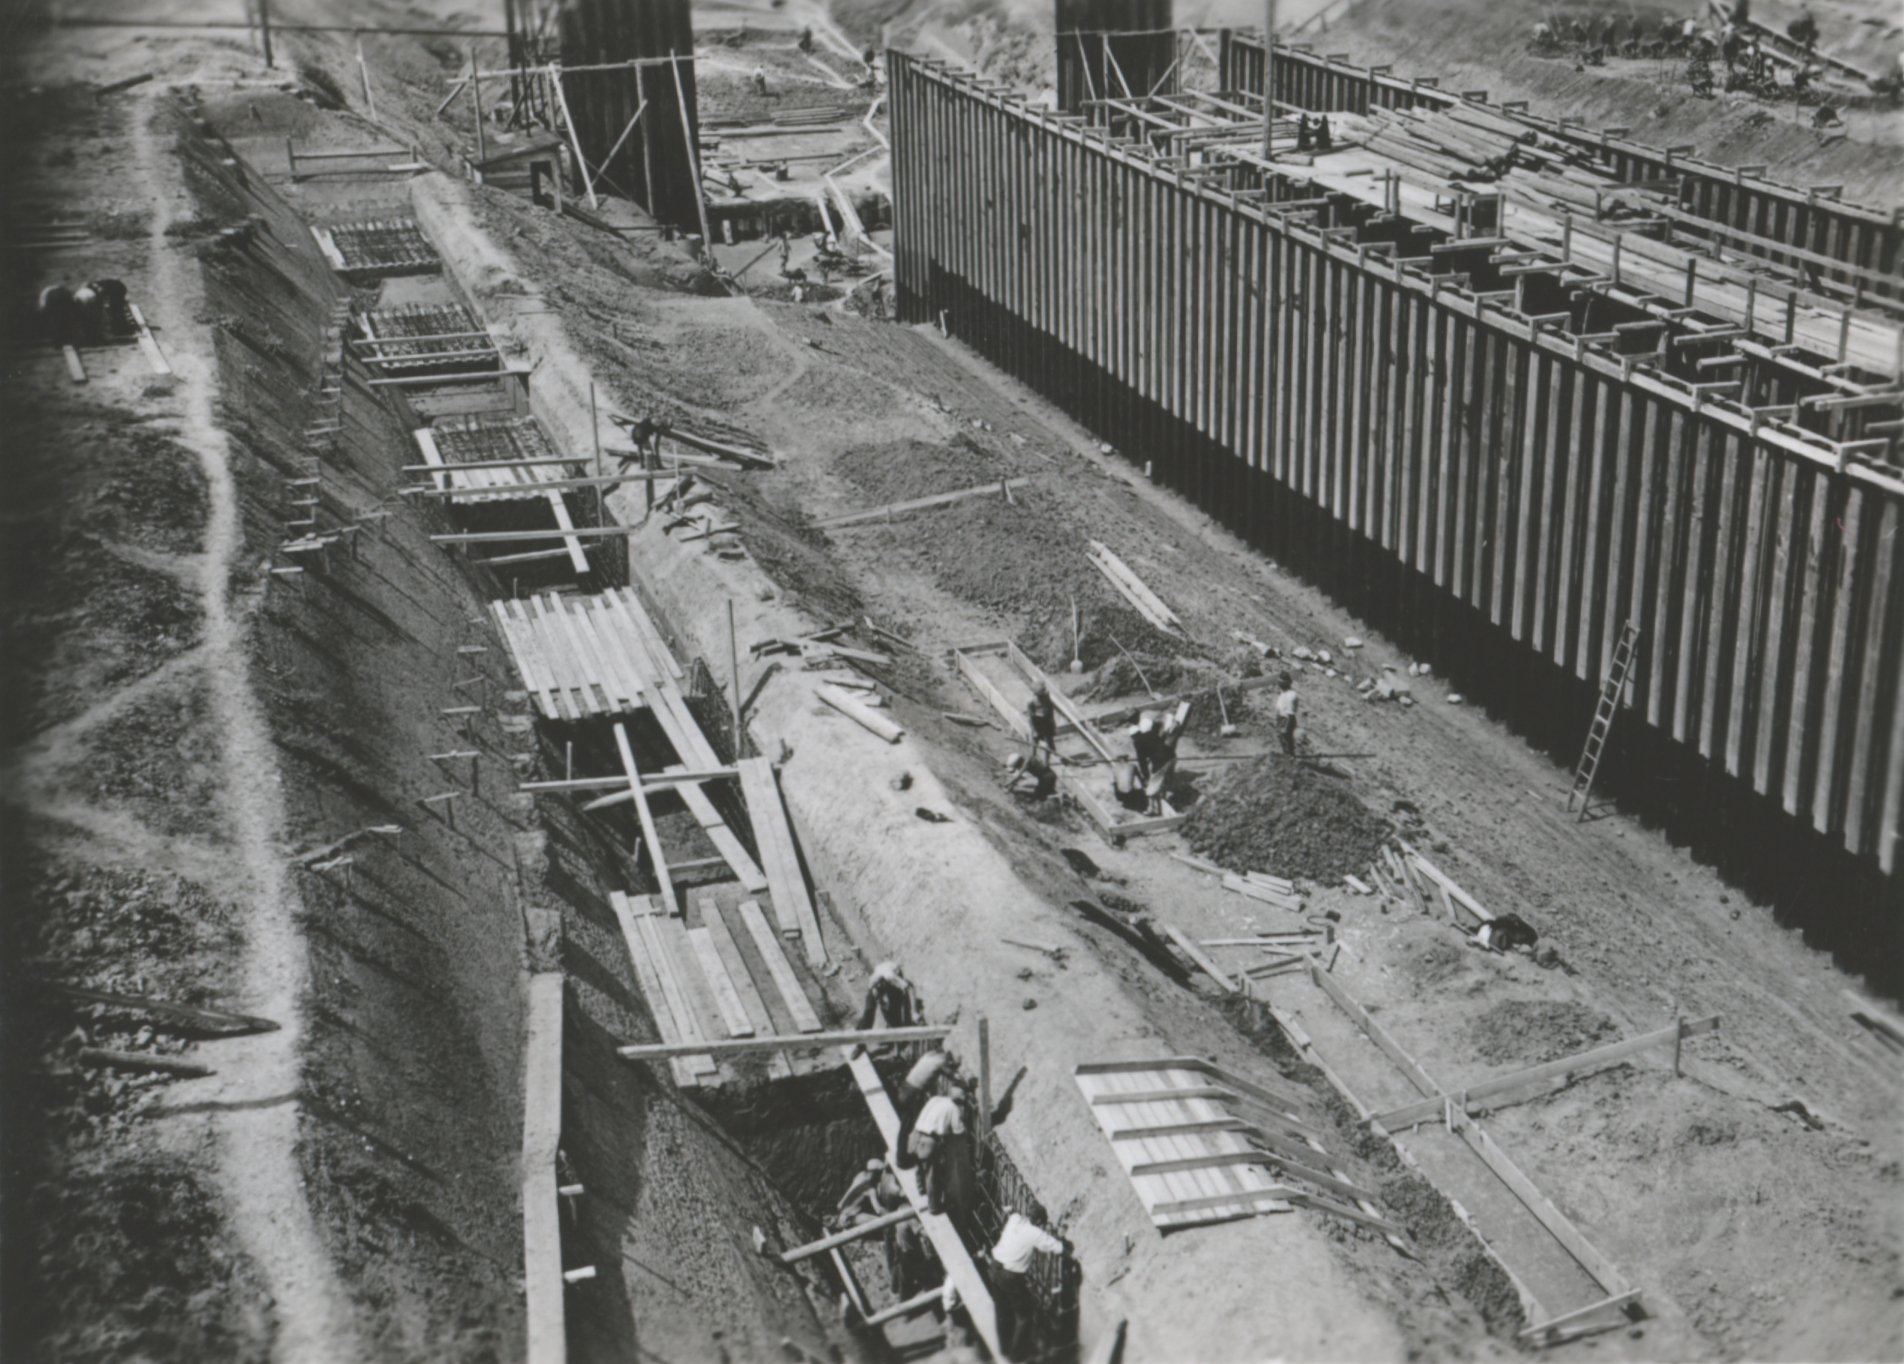 Baloldali kihorgonyzó lapok betonozása - Földszintöltés, 1939. augusztus 31. (Magyar Környezetvédelmi és Vízügyi Múzeum - Duna Múzeum CC BY-NC-SA)